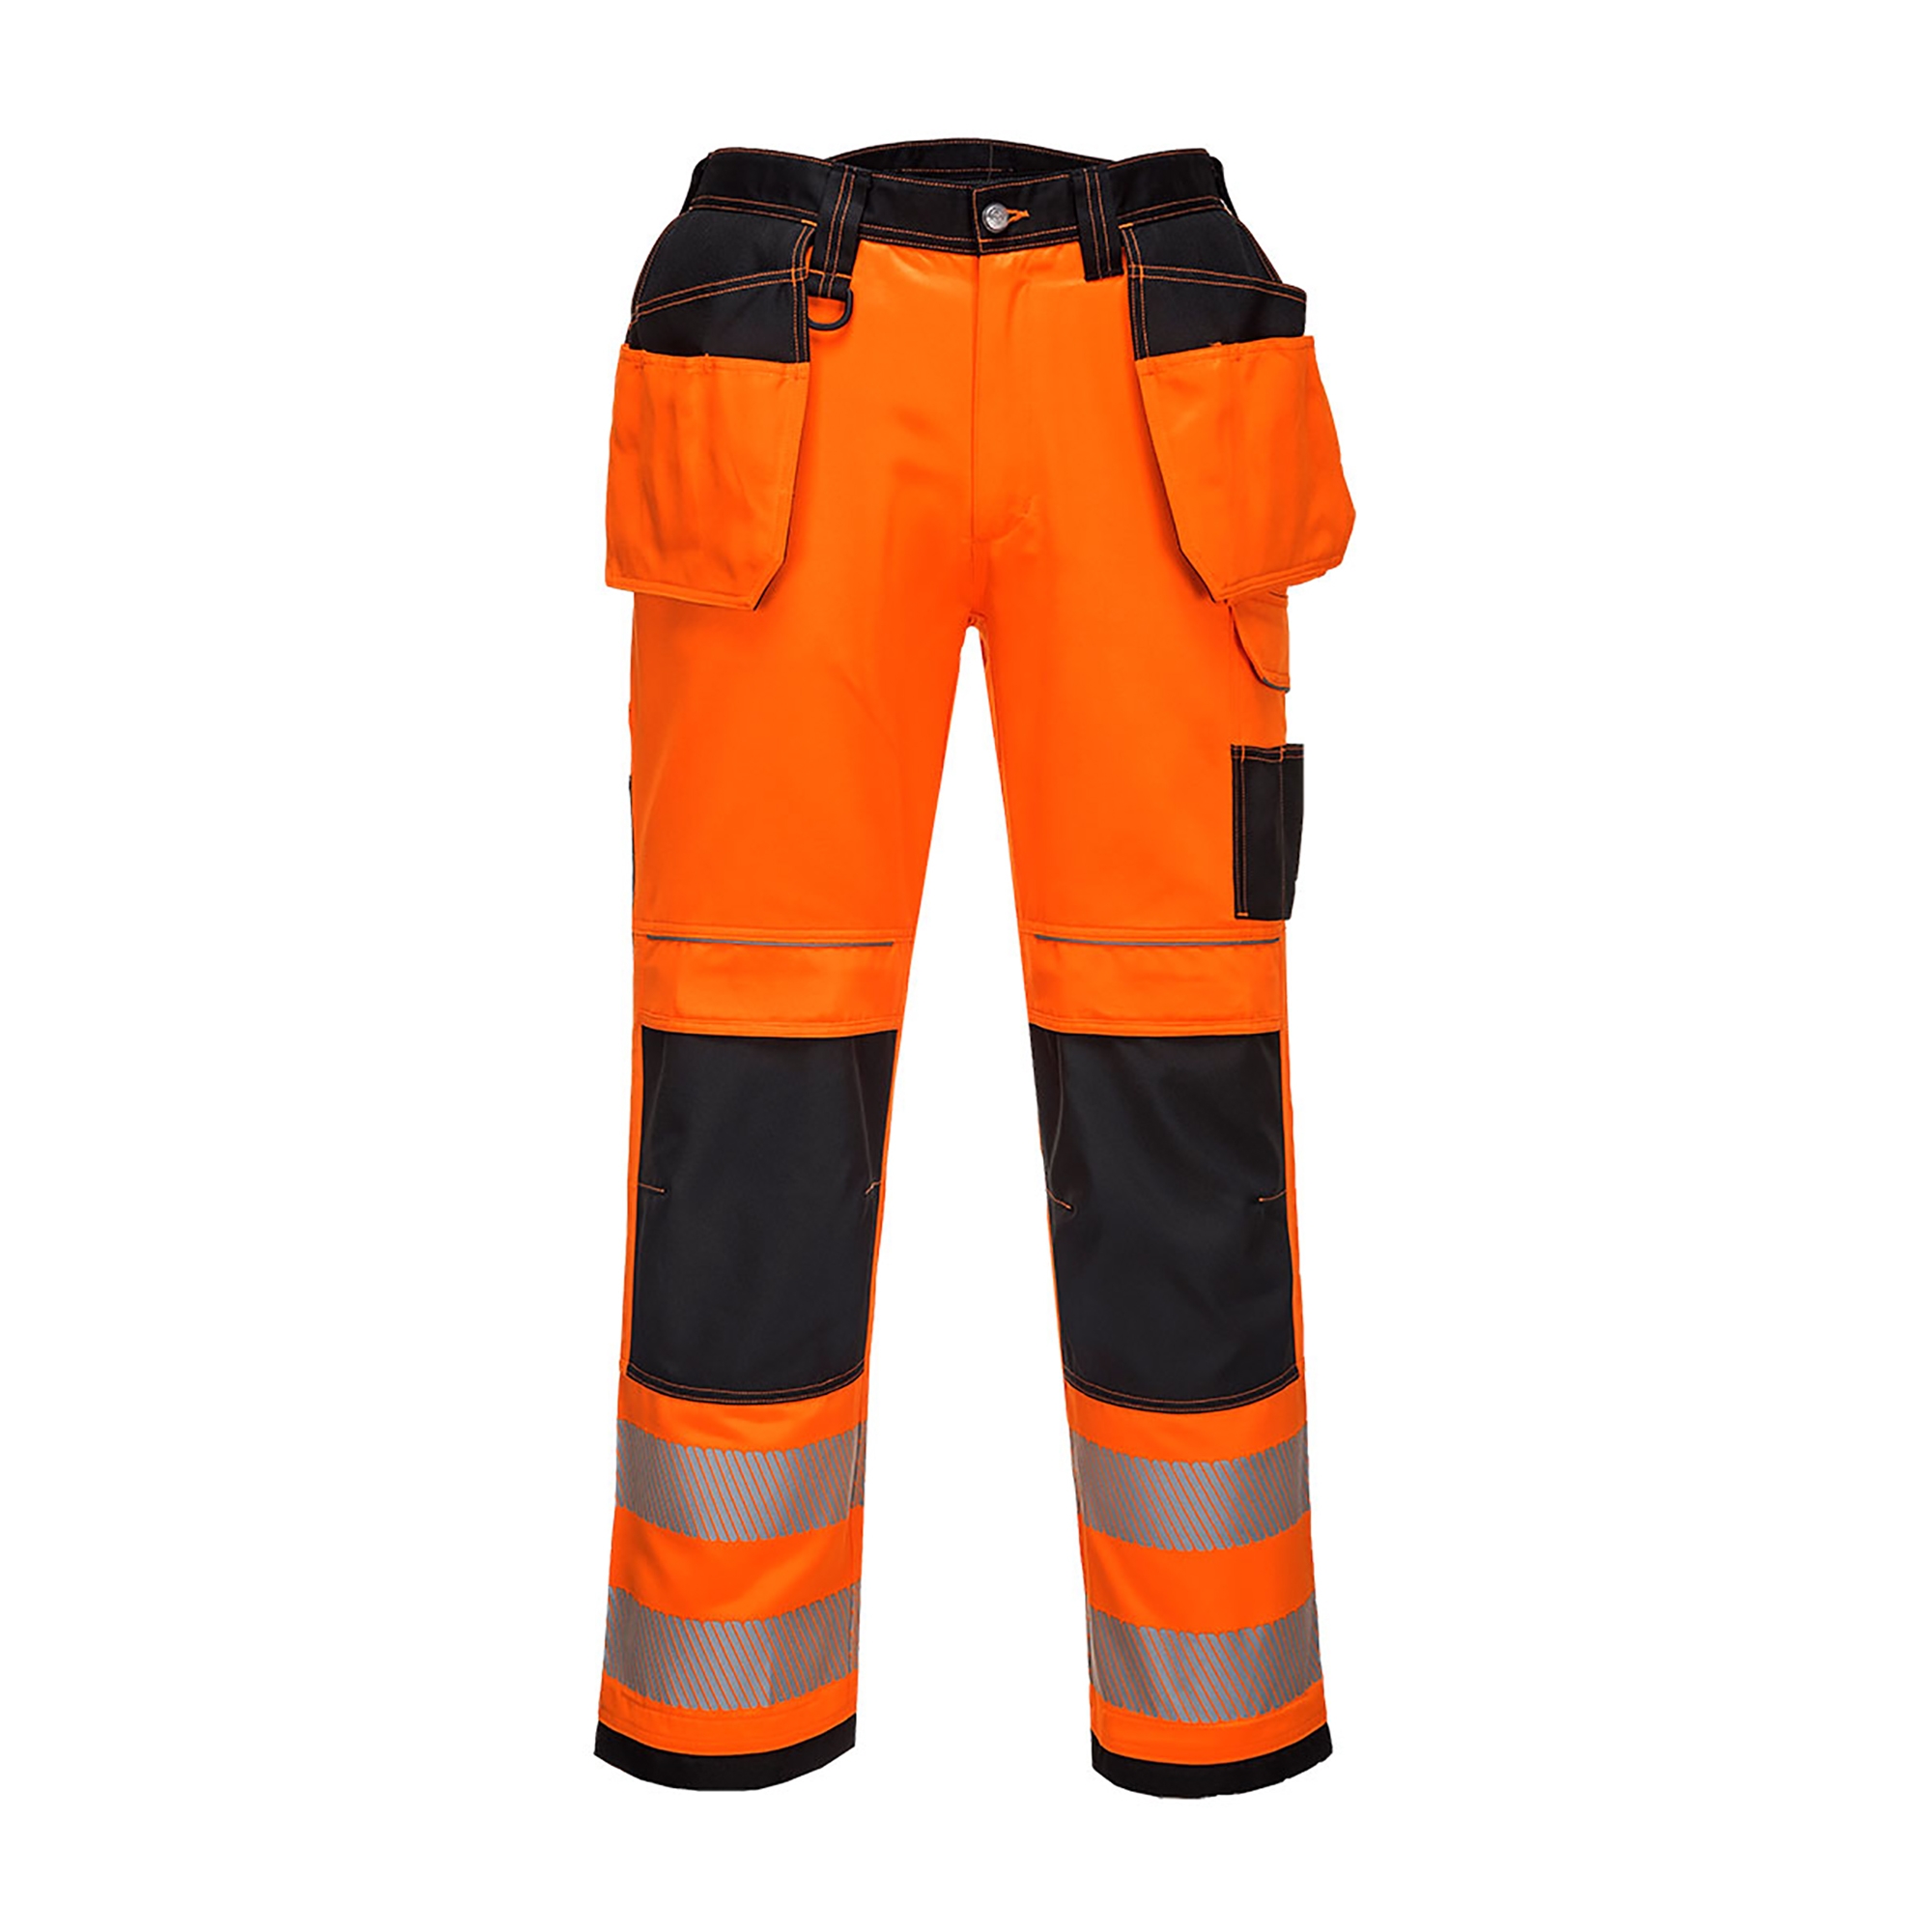 Portwest Holster Pocket Work Trousers Hi Vis Safety Pants Mens FREE KNEE PADS 